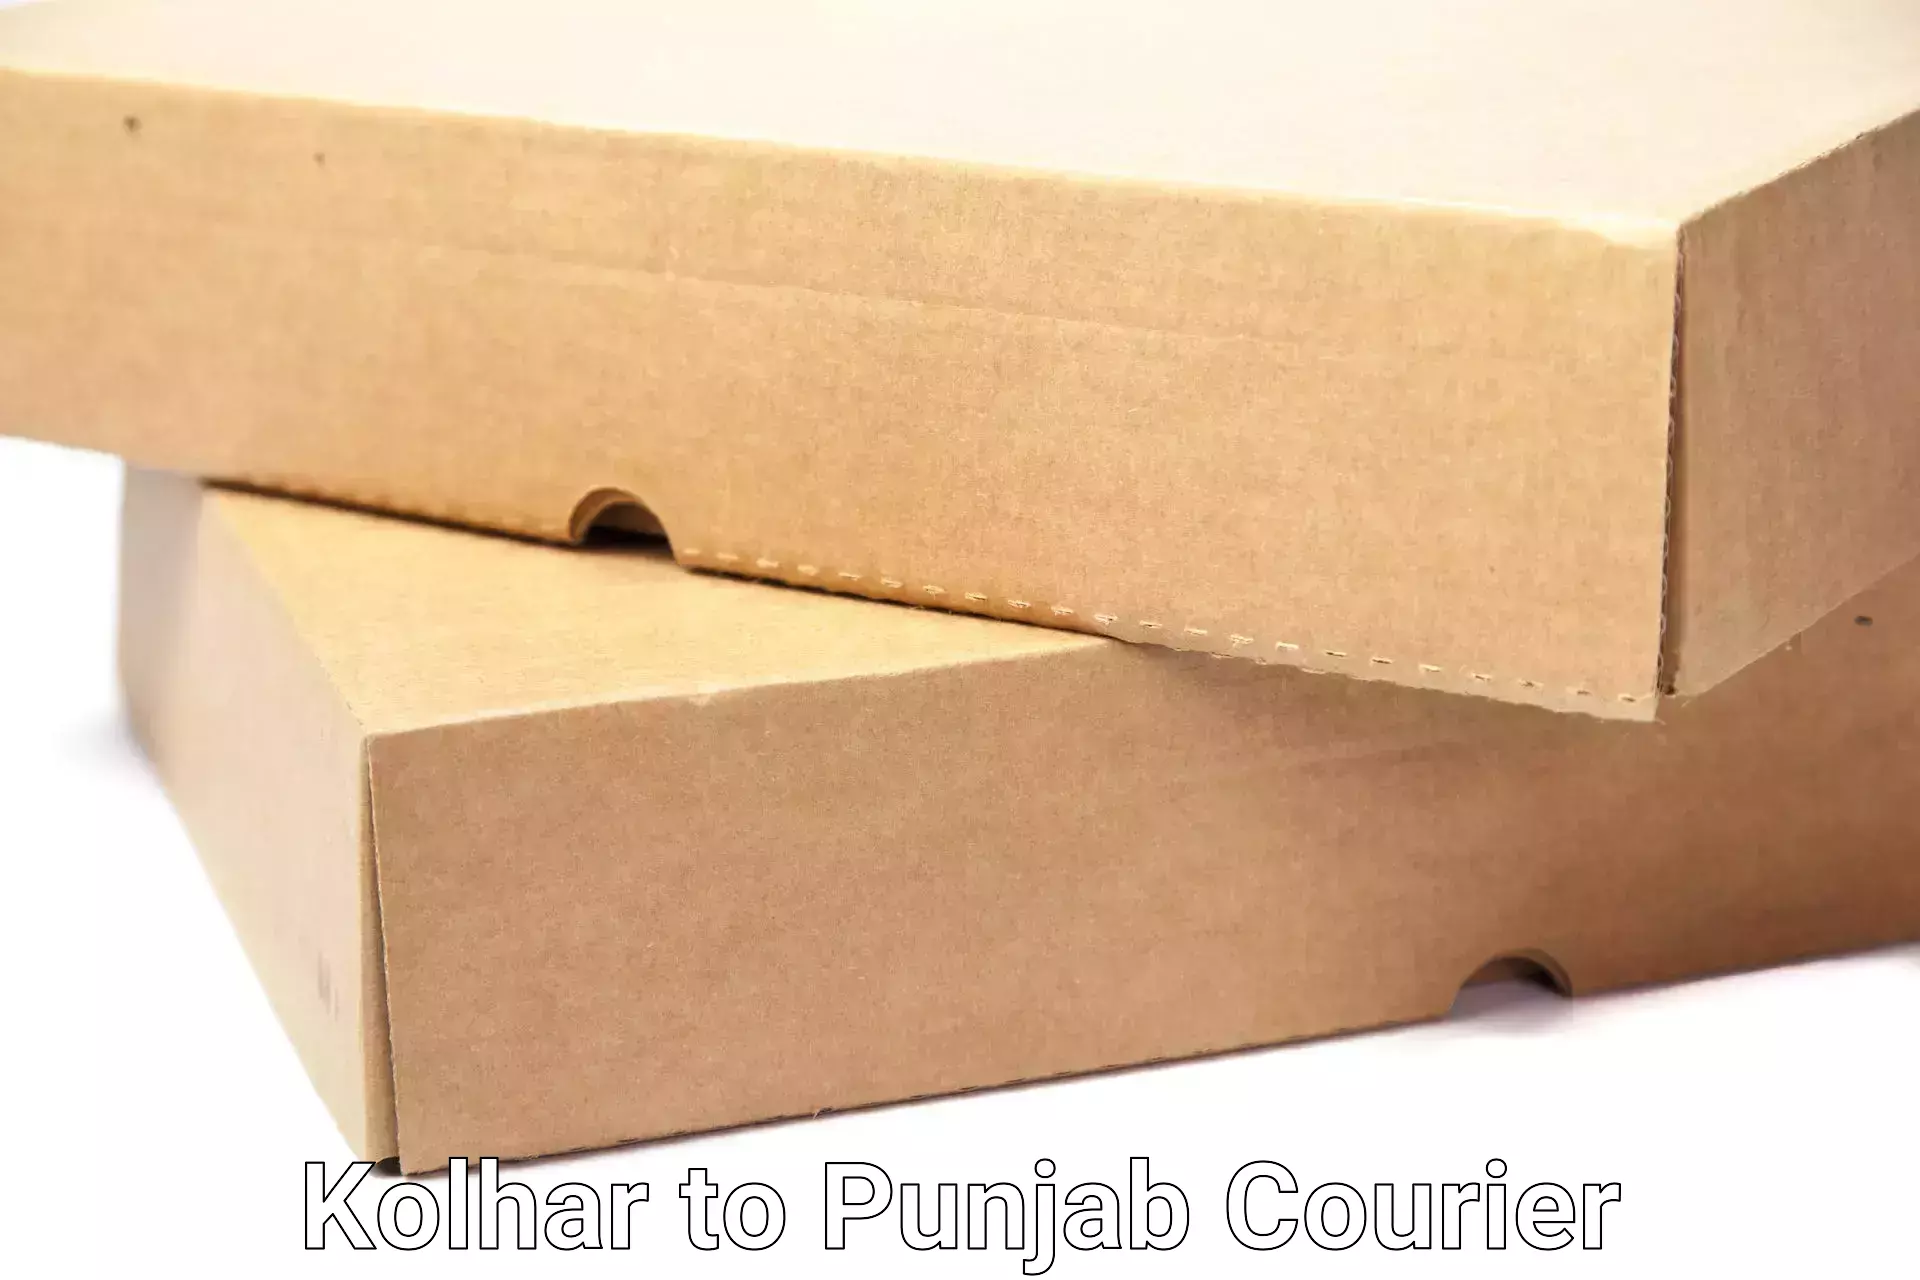 Furniture transport professionals Kolhar to Punjab